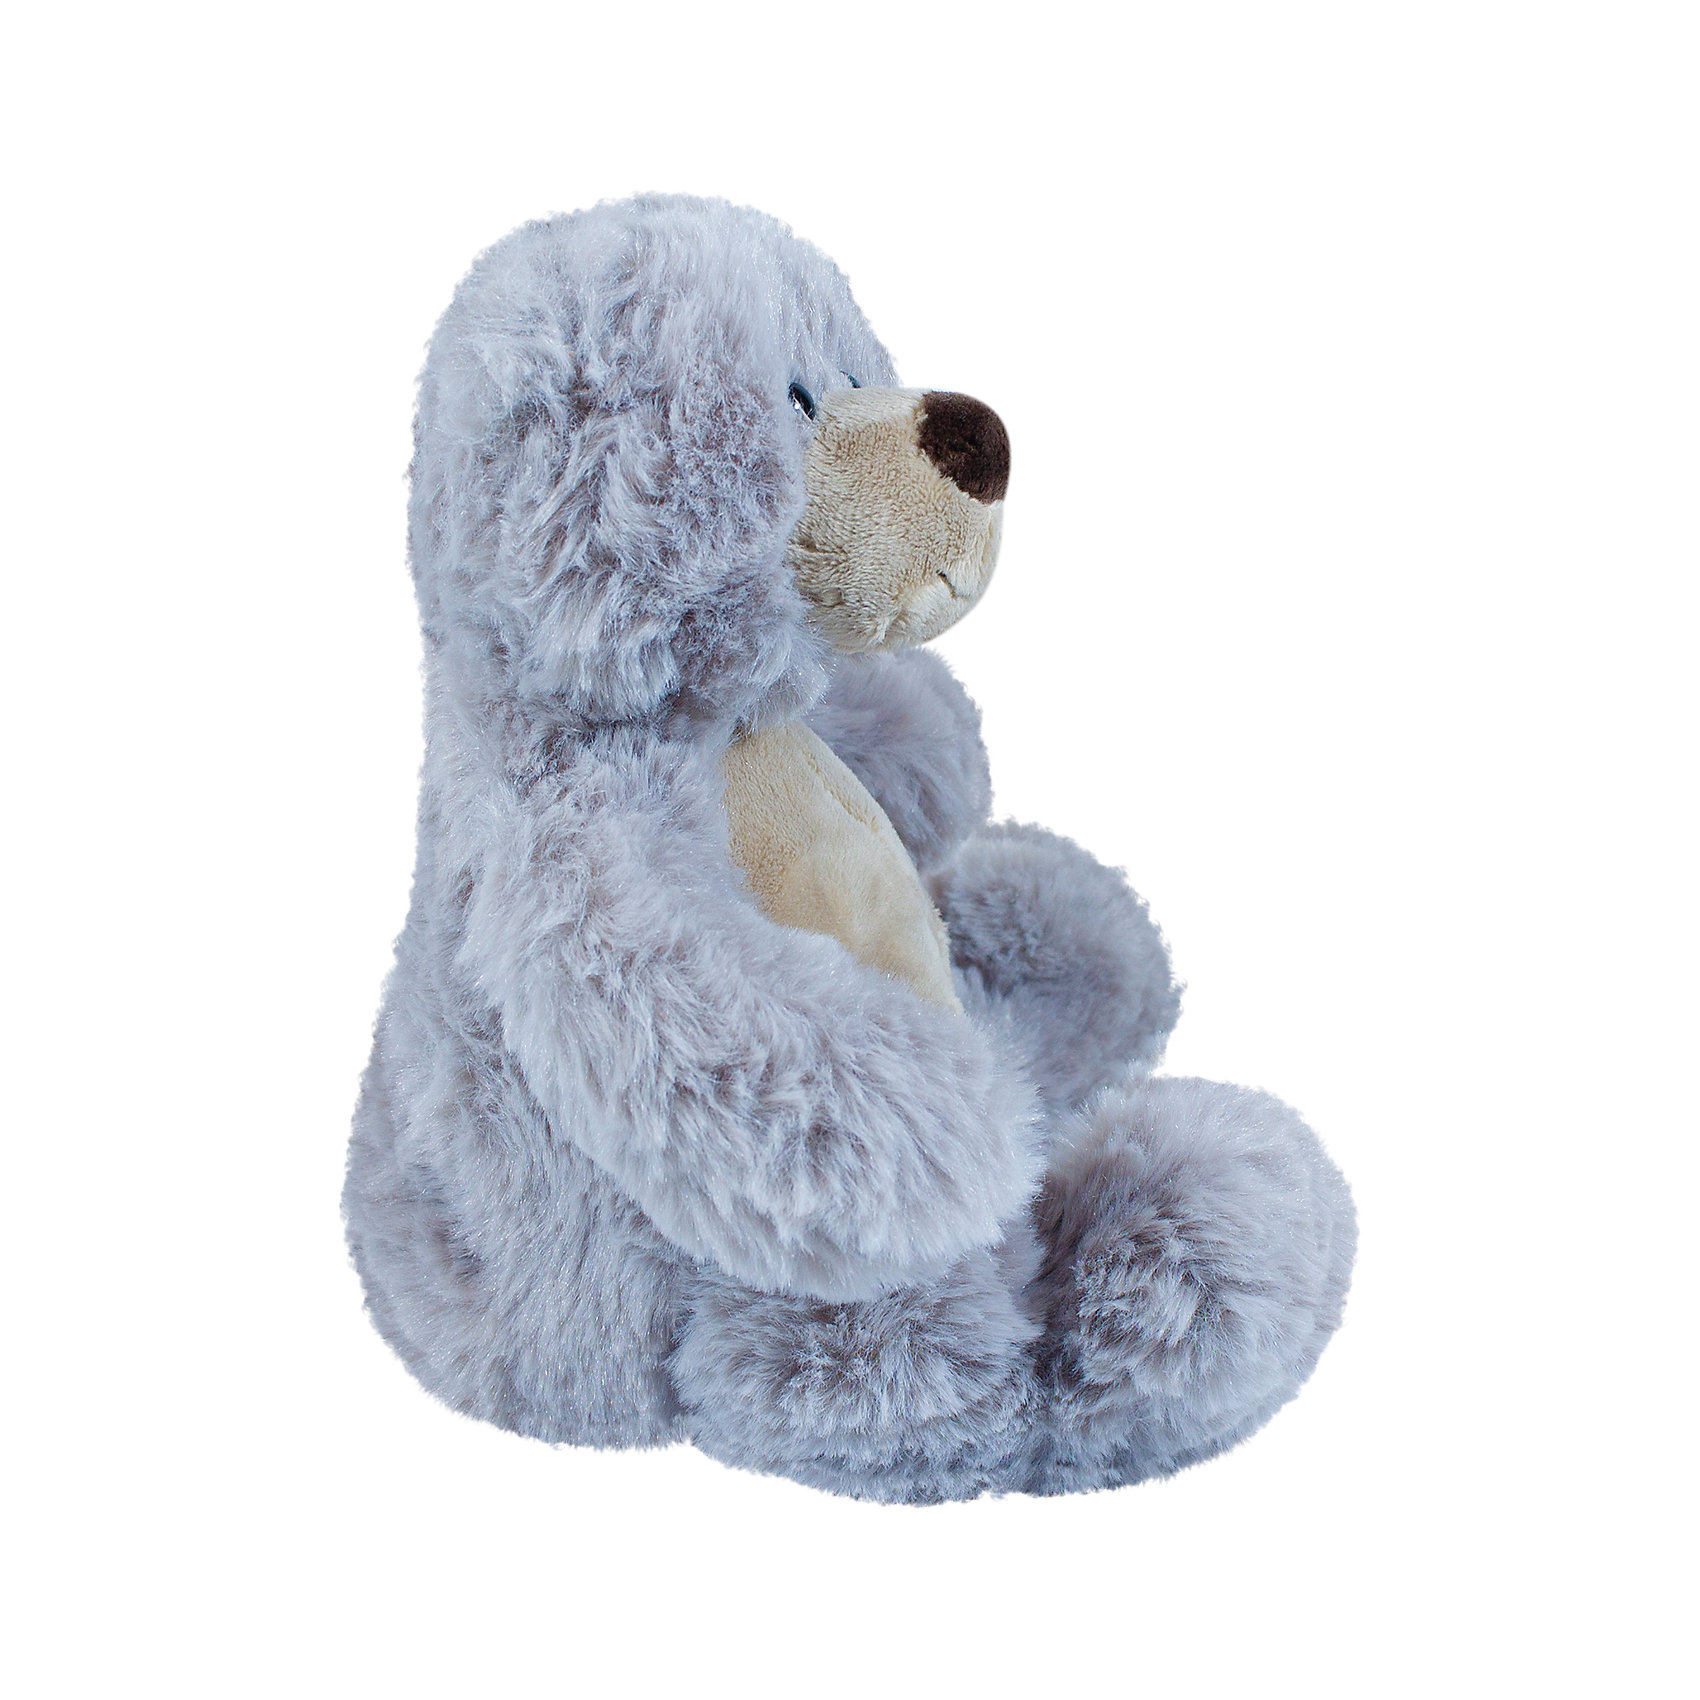 Мягкая игрушка Медвежонок Альфред, 22 см Teddykompaniet 15012899